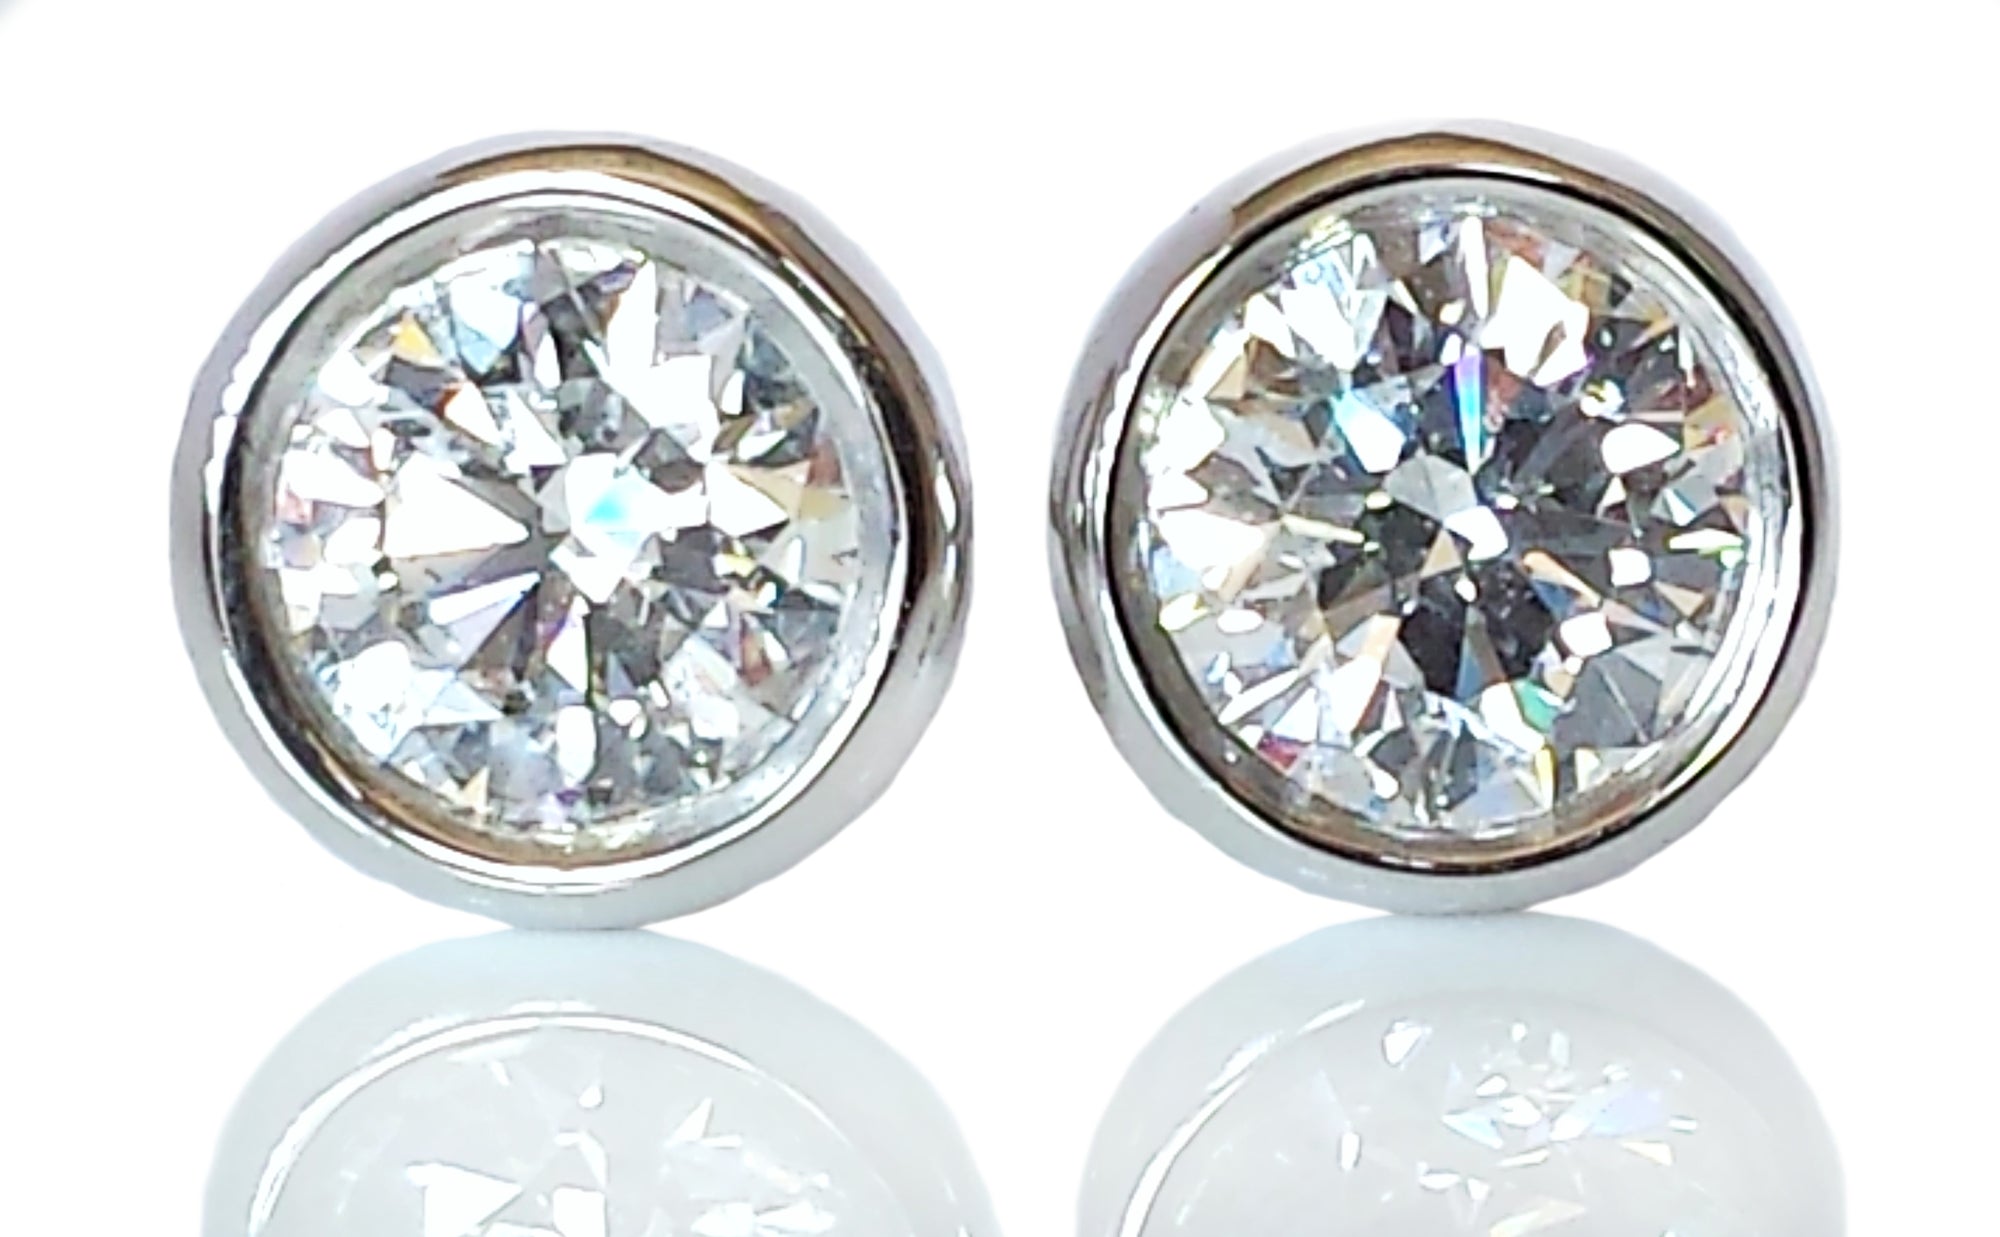 Tiffany & Co .72ct F/VVS2 Peretti Bezet Plat Diamond Stud Earrings Receipt Box